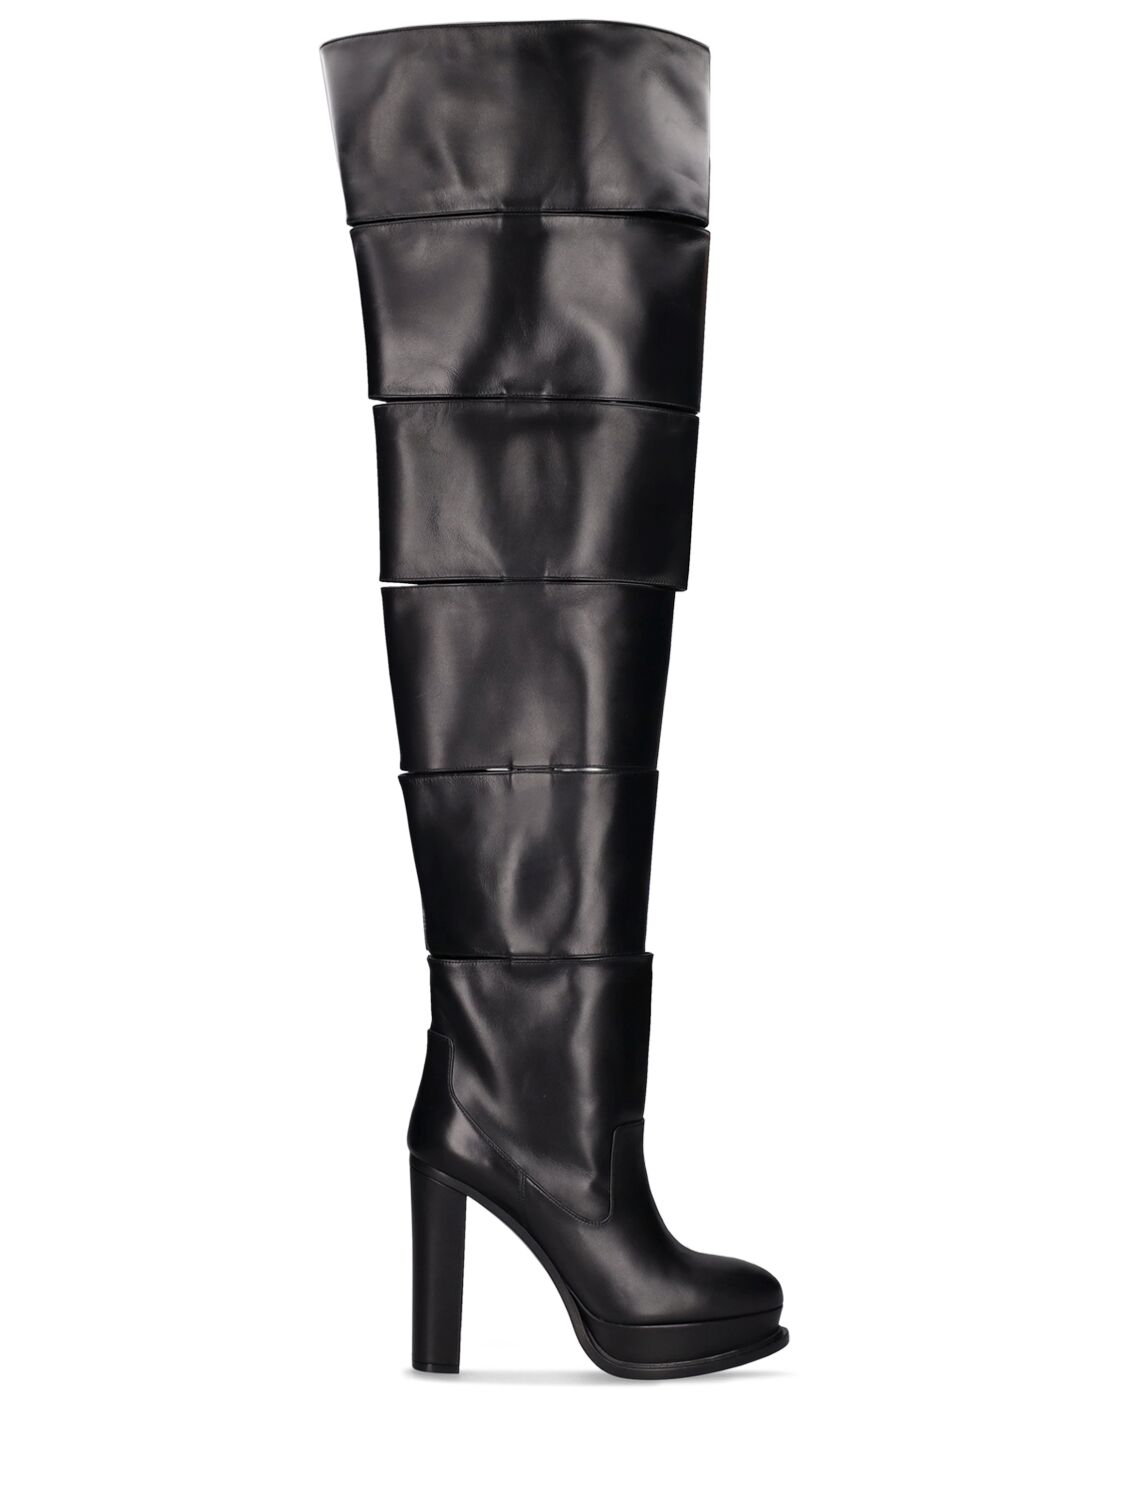 Mm Leather Tall Boots - ALEXANDER MCQUEEN - Modalova